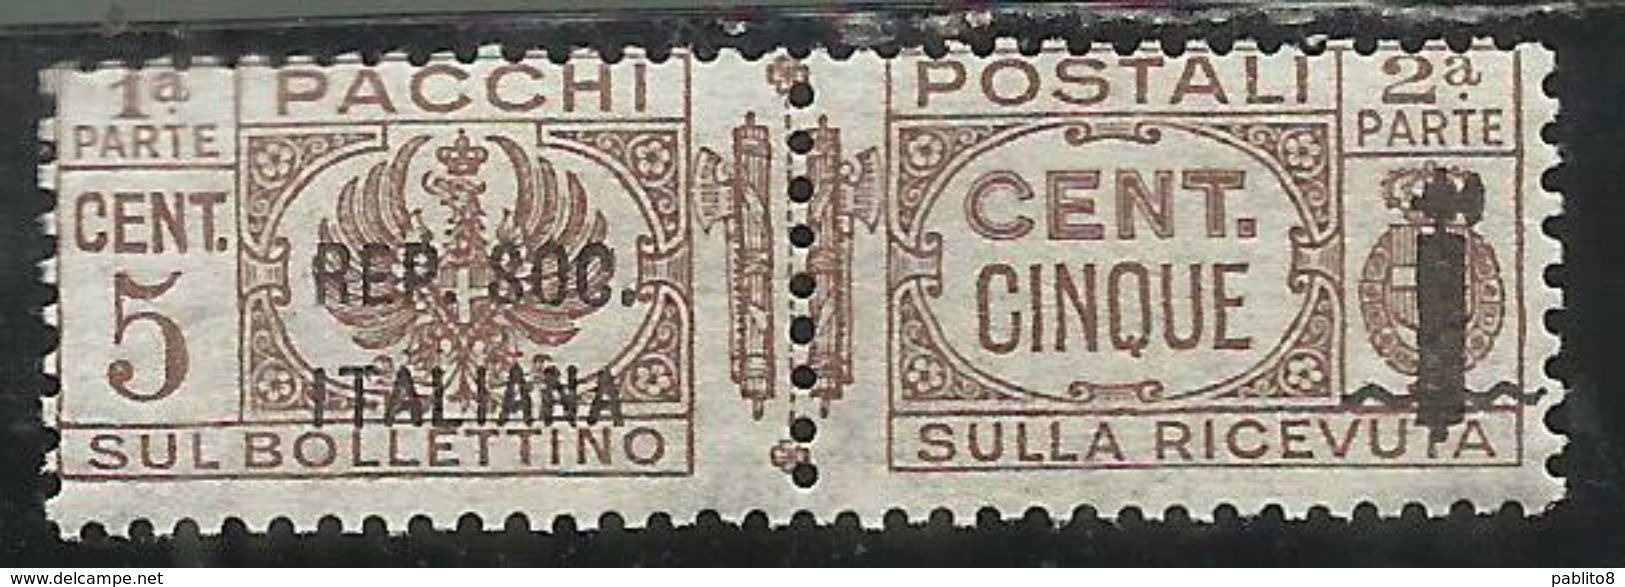 ITALIA REGNO ITALY KINGDOM 1944 RSI REPUBBLICA SOCIALE PACCHI FASCIETTO CENT. 5c MNH - Postpaketten